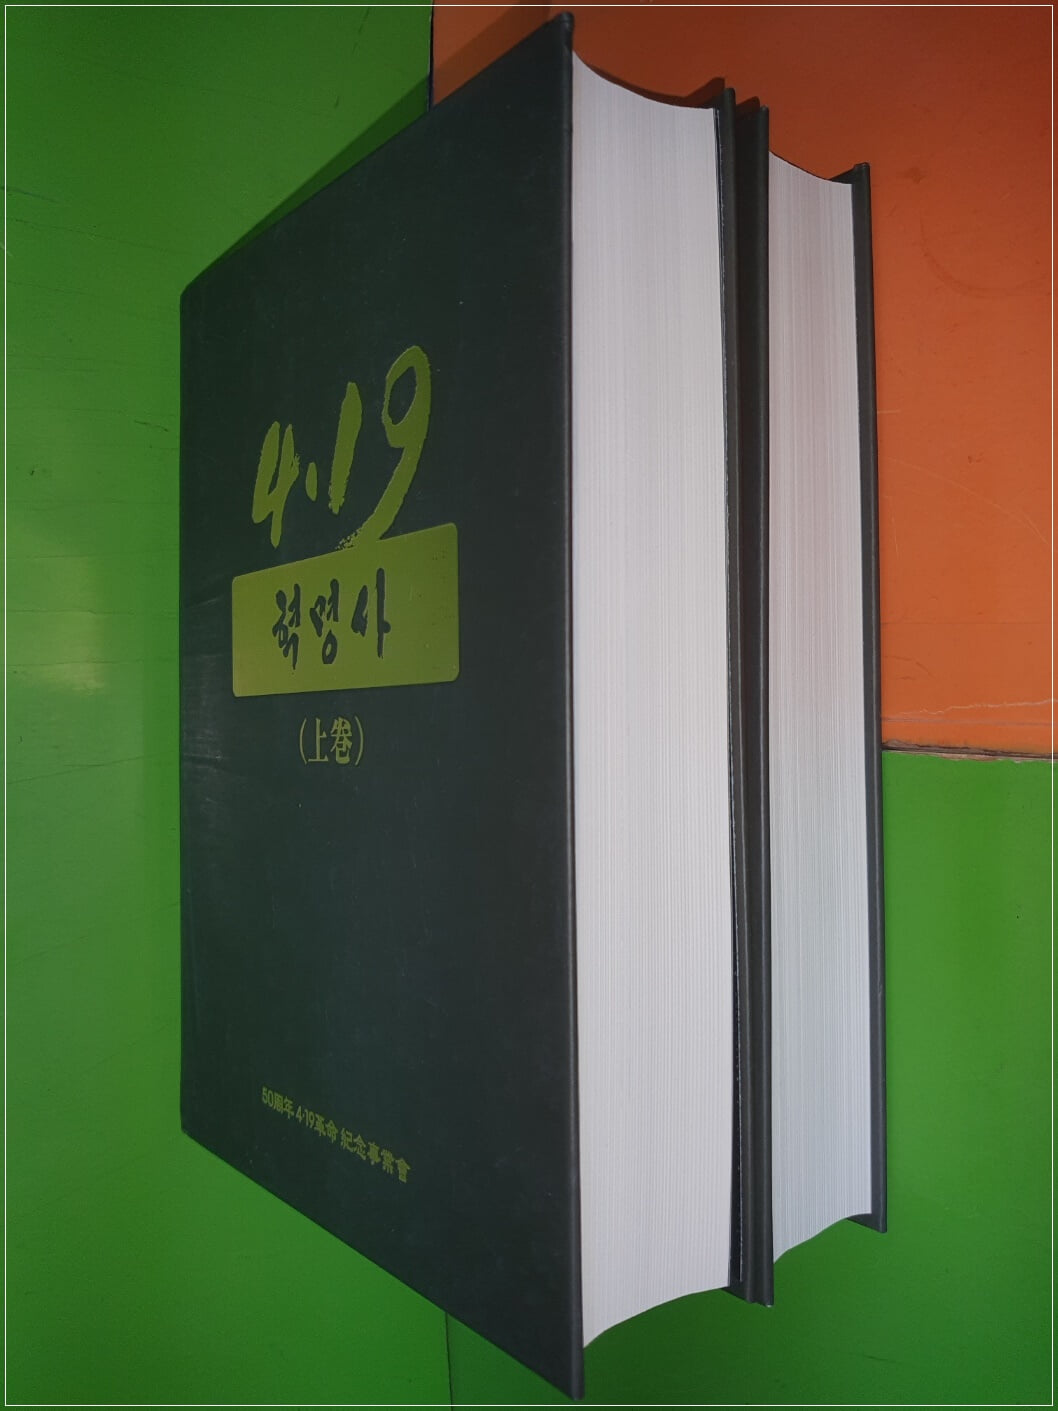 4.19혁명사(상.하권) - 50주년4.19혁명기념사업회(2011년)